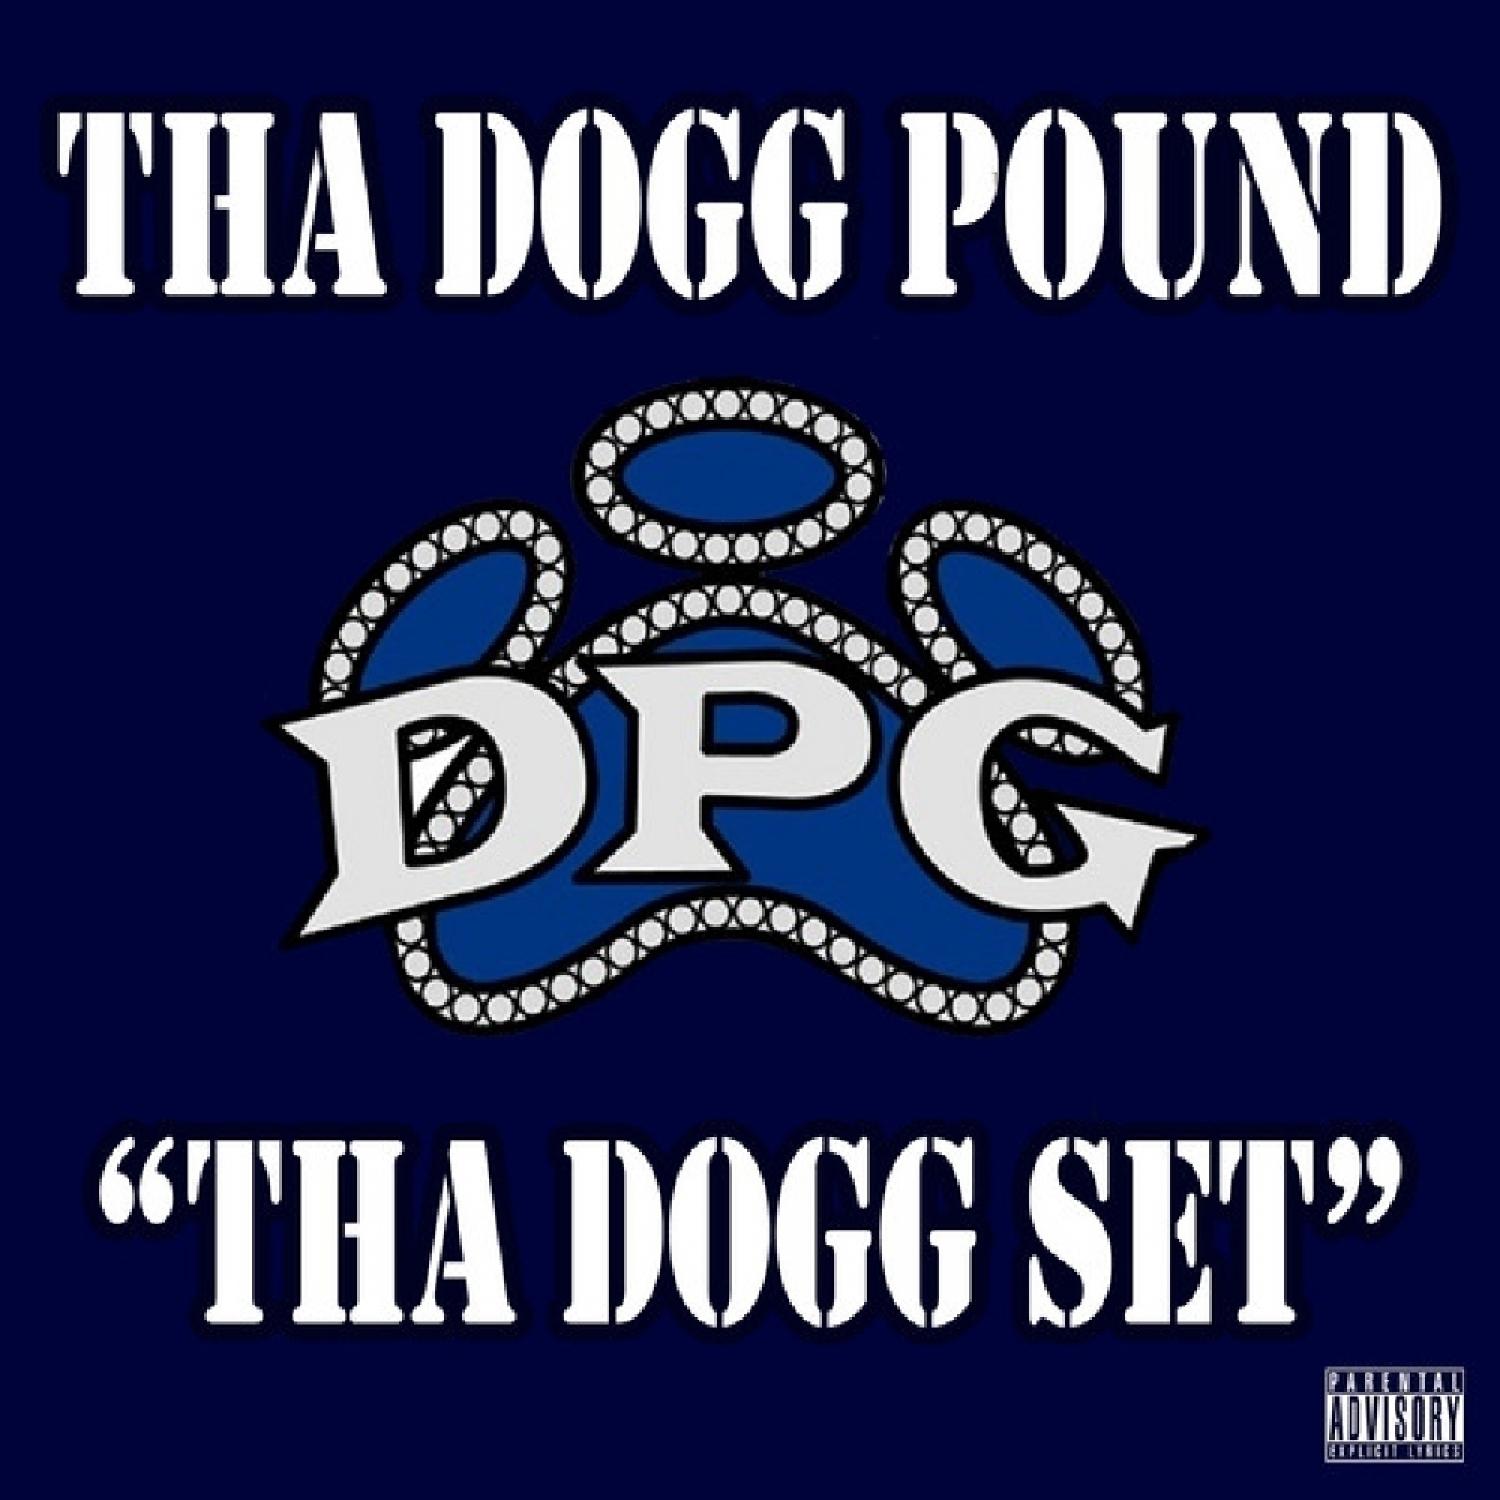 Tha Dogg Set